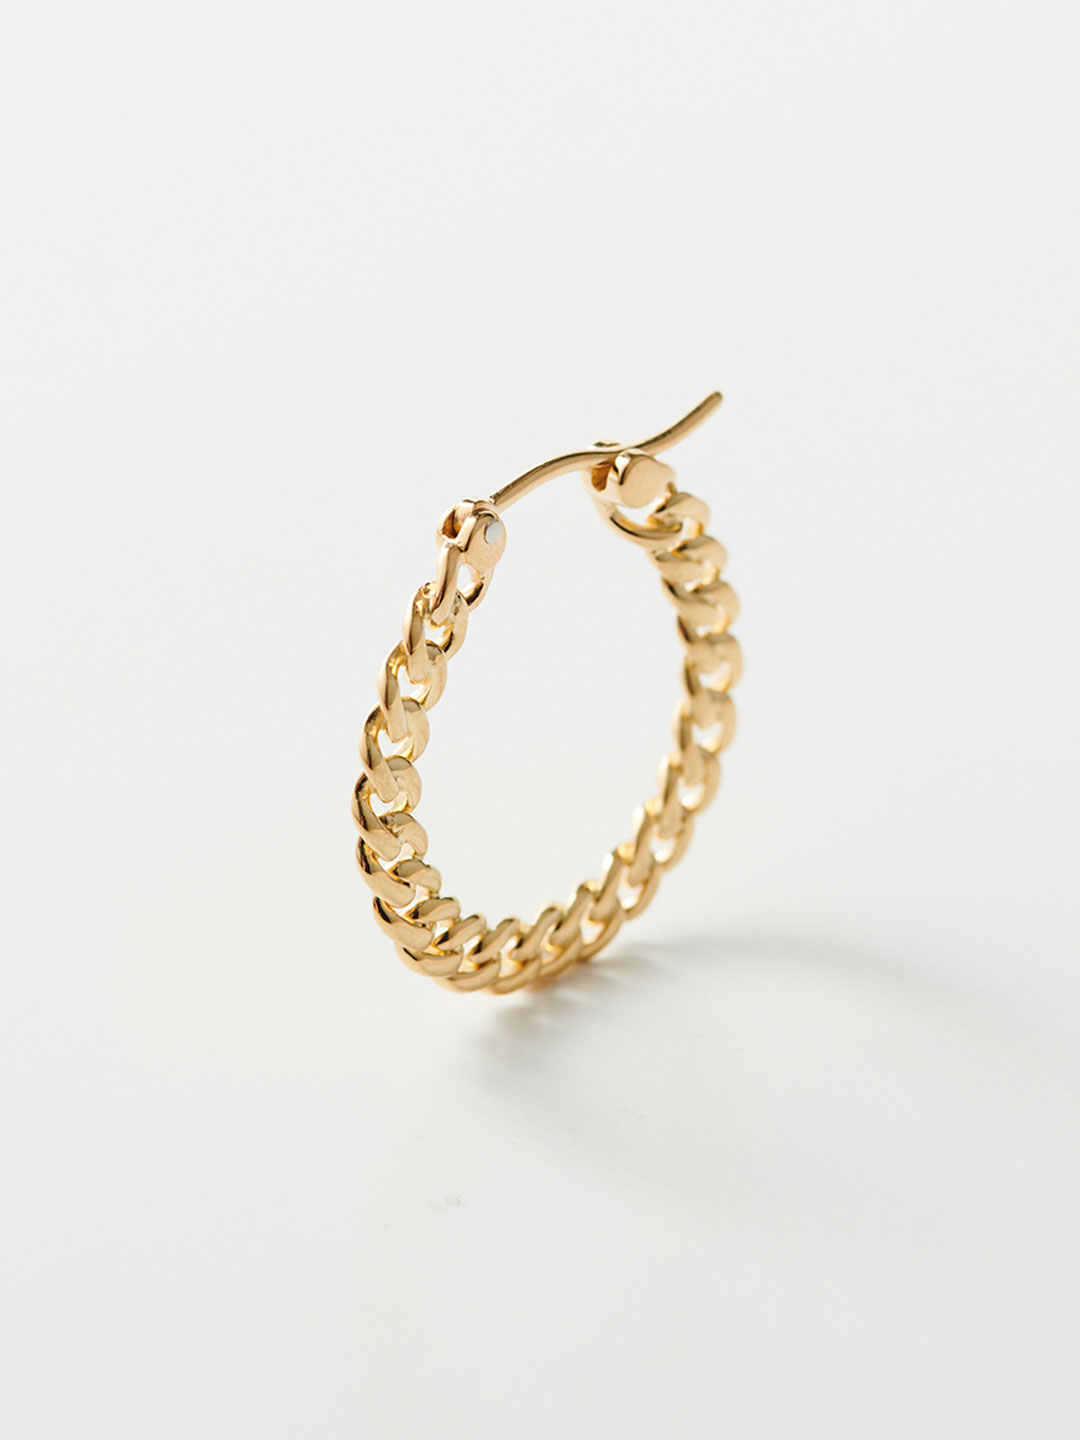 L&S Kihei Pierced Earring / Sideways- Yellow Gold